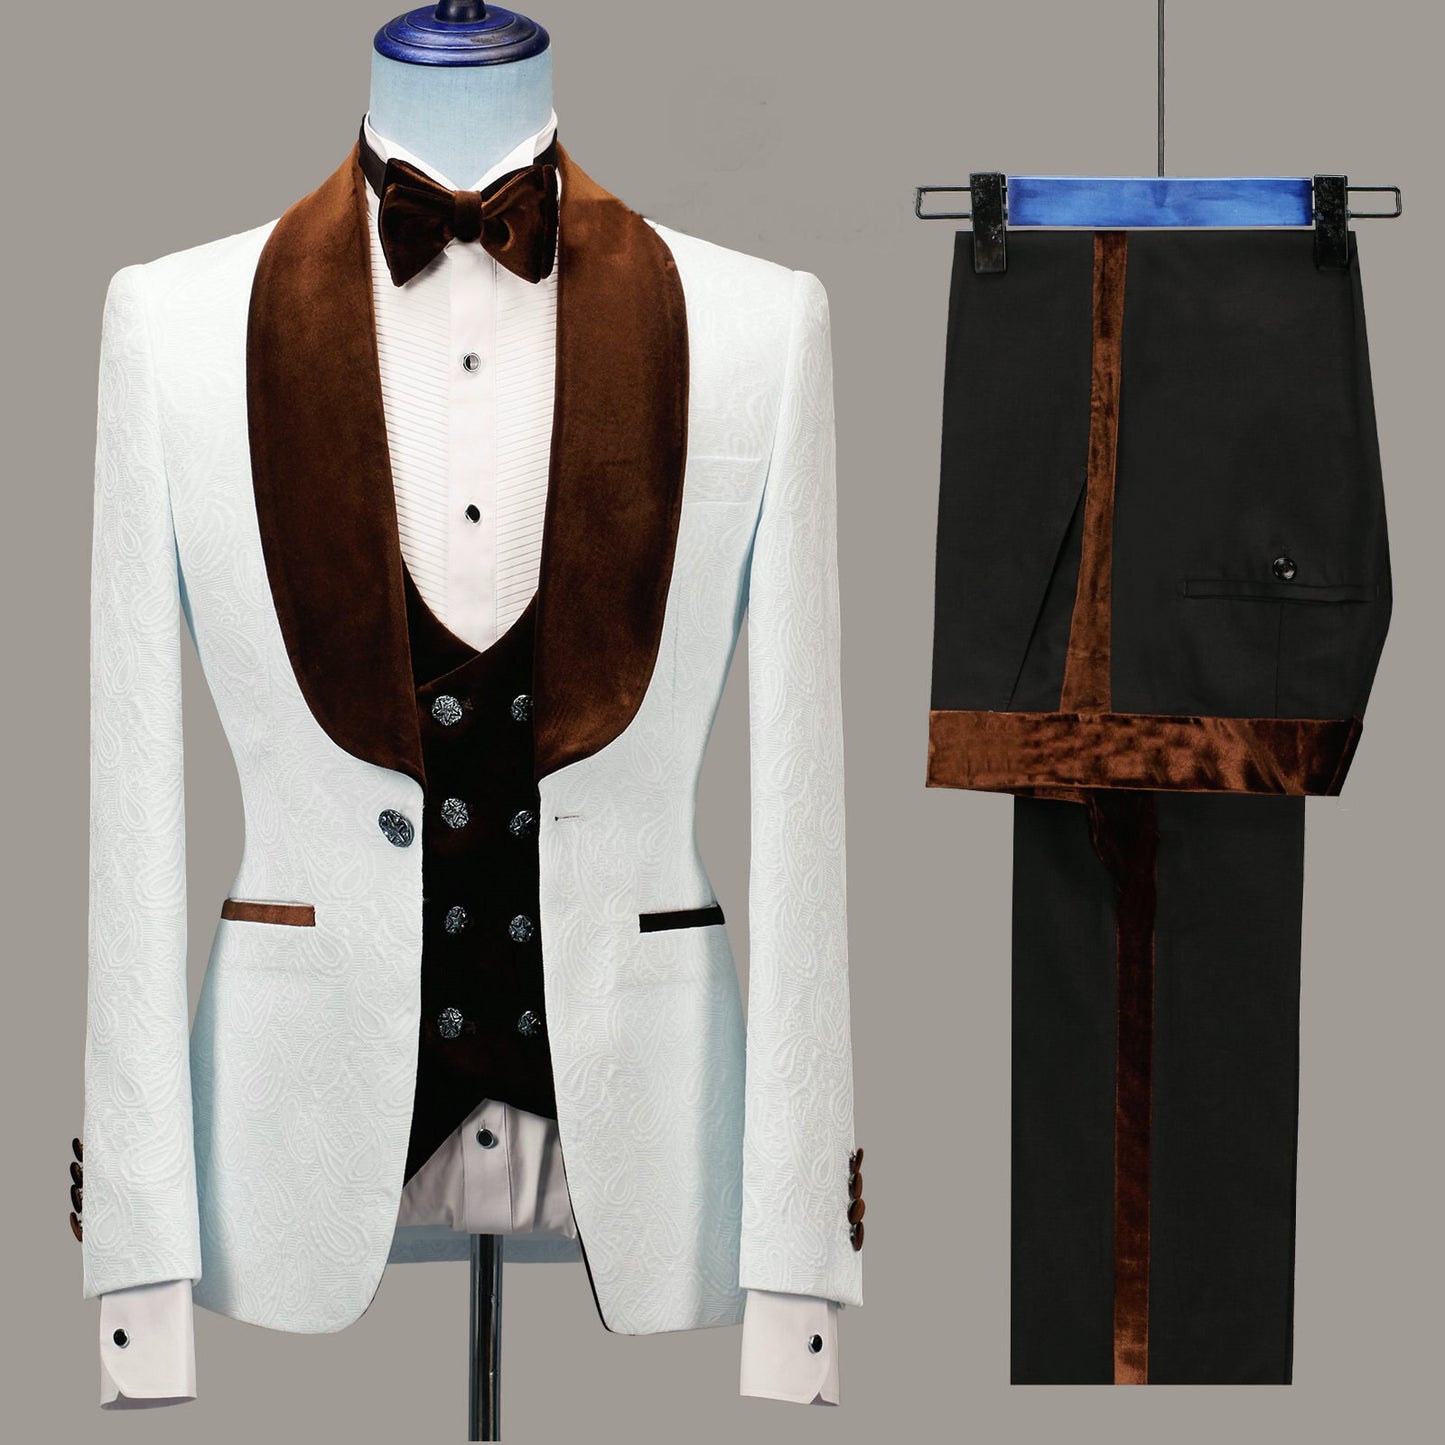 Floral Jacket Men Suit Slim Fit Wedding Tuxedo Navy Blue Velvet Lapel Groom Party Suits Costume Homme Best Man Blazer